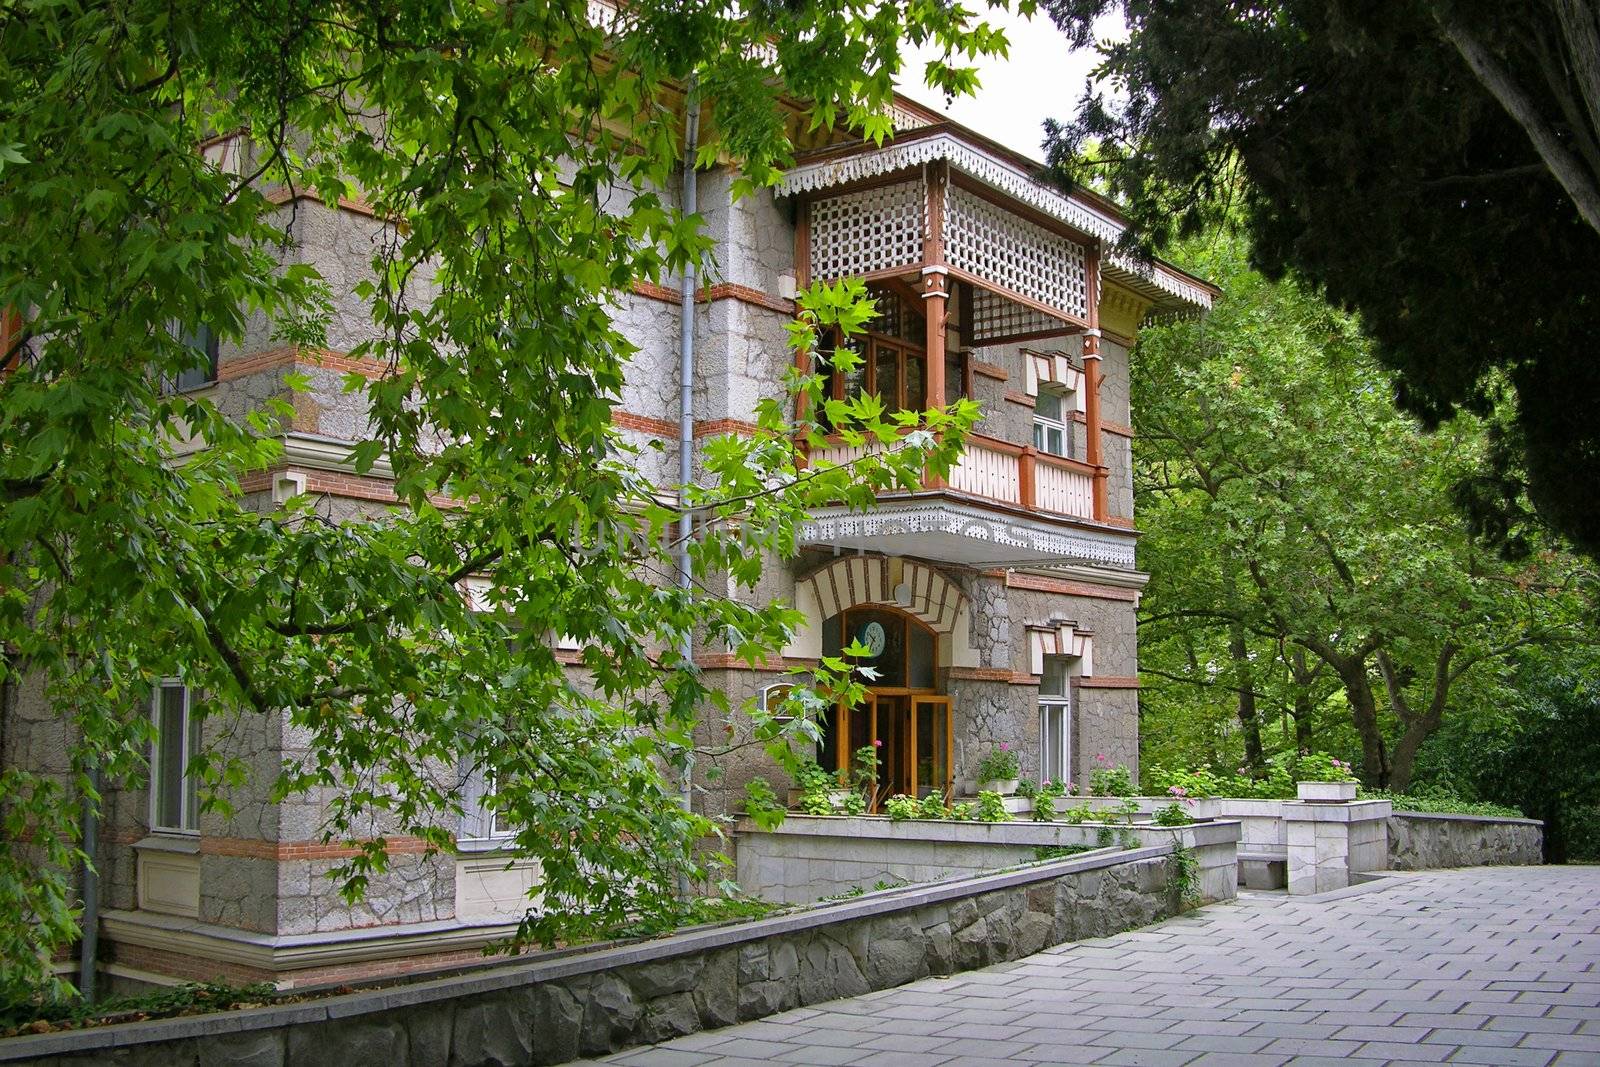 Sanatorium building in Gurzuf (Crimea Ukraine)